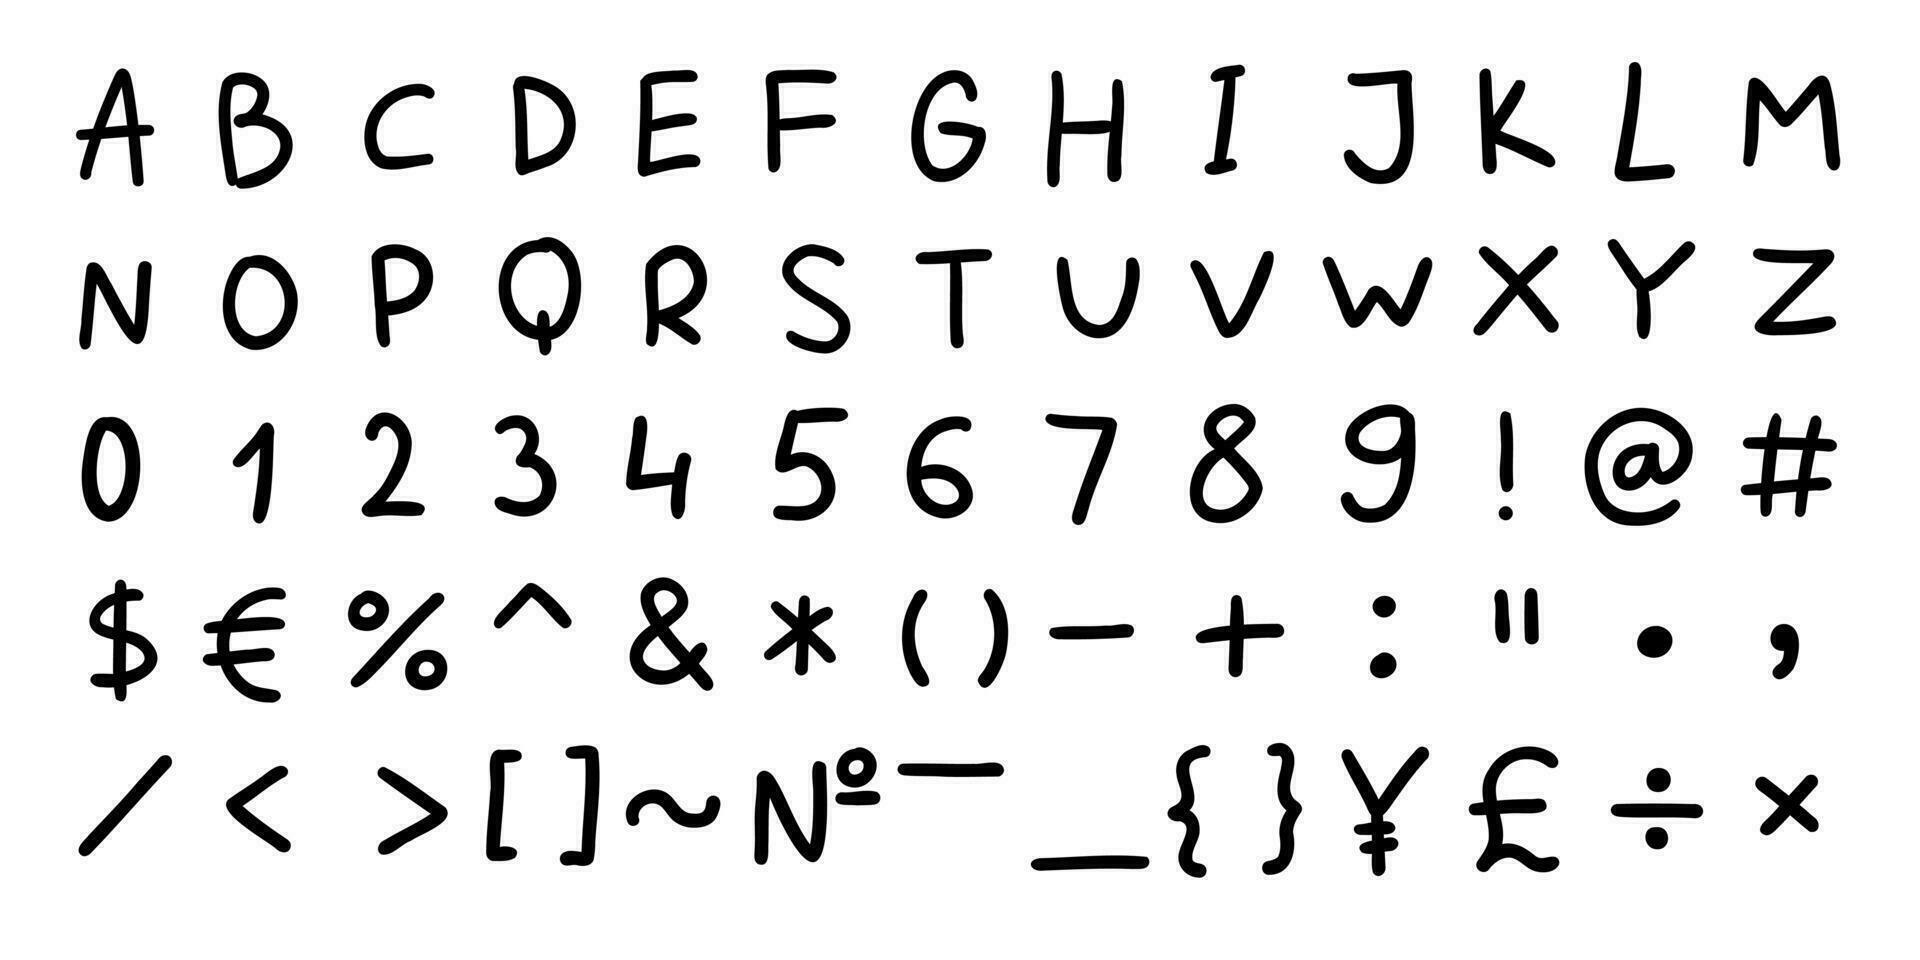 einfach schwarz Englisch Latein ABC Alphabet Schriftart mit Ziffern und Symbole handgeschrieben ein zu z, 0 zu 9 Satz. Vektor Illustration im Gekritzel Stil isoliert auf Weiß Hintergrund. zum Karte, Logo, Typografie.